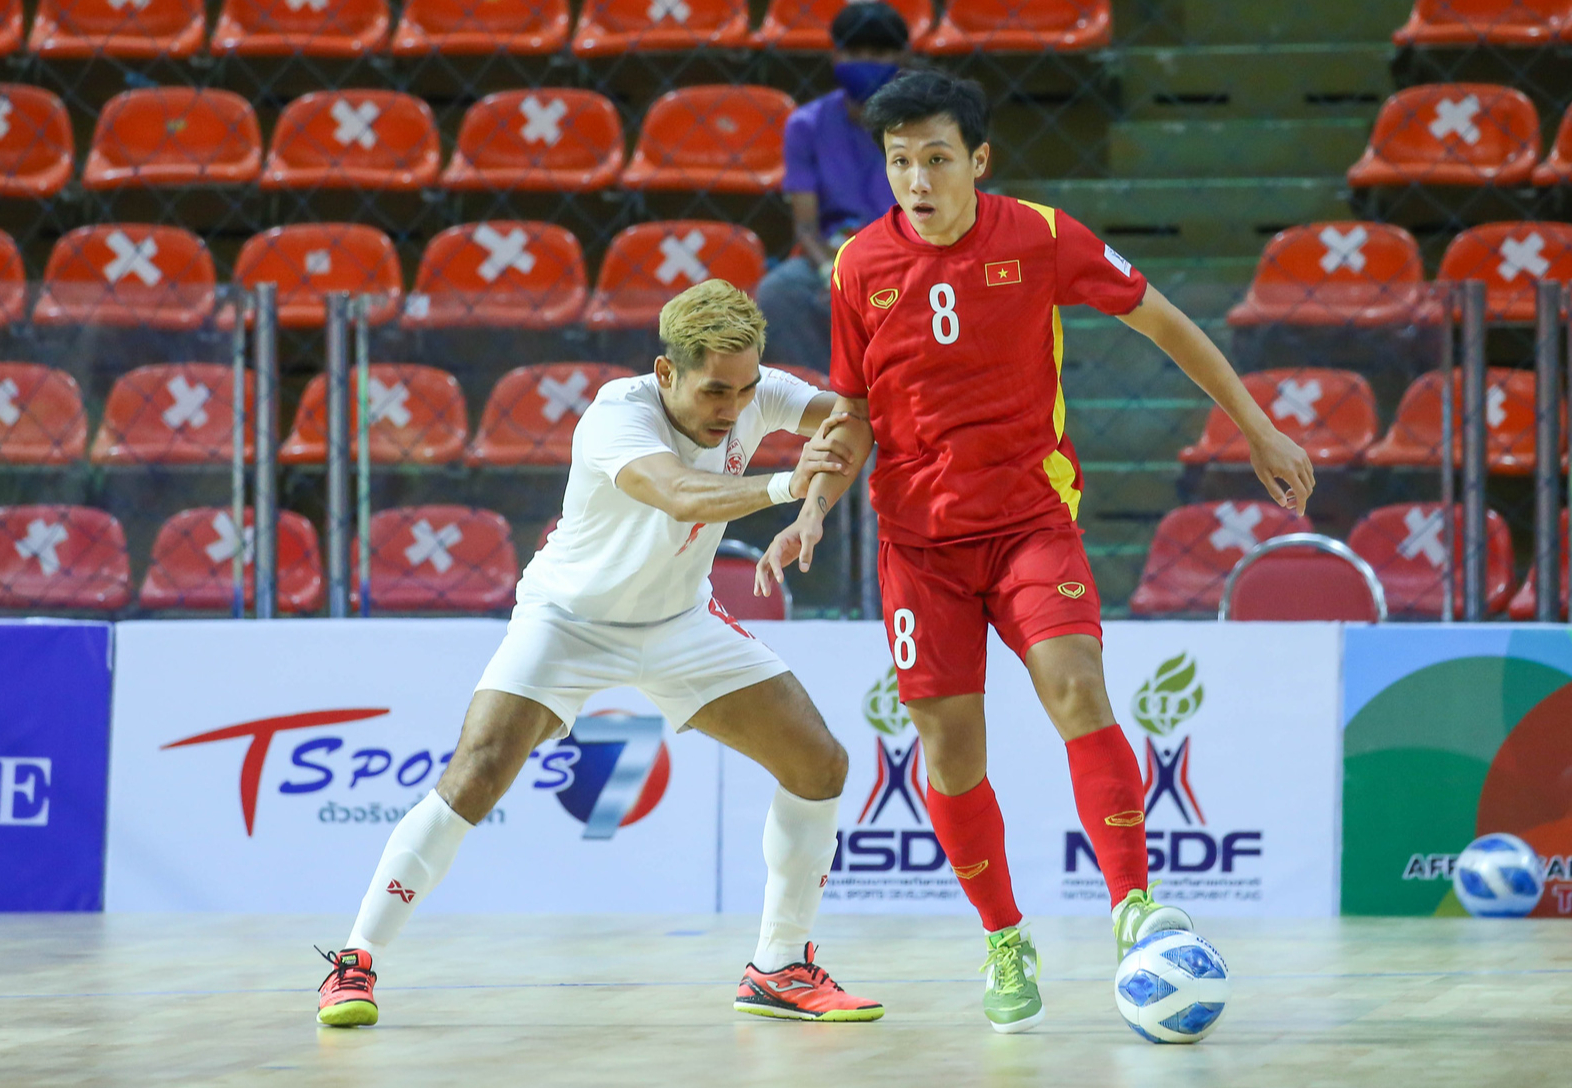 Thắng đậm Timor Leste, tuyển Việt Nam đứng nhất bảng AFF Futsal Championship 2022 - Ảnh 1.